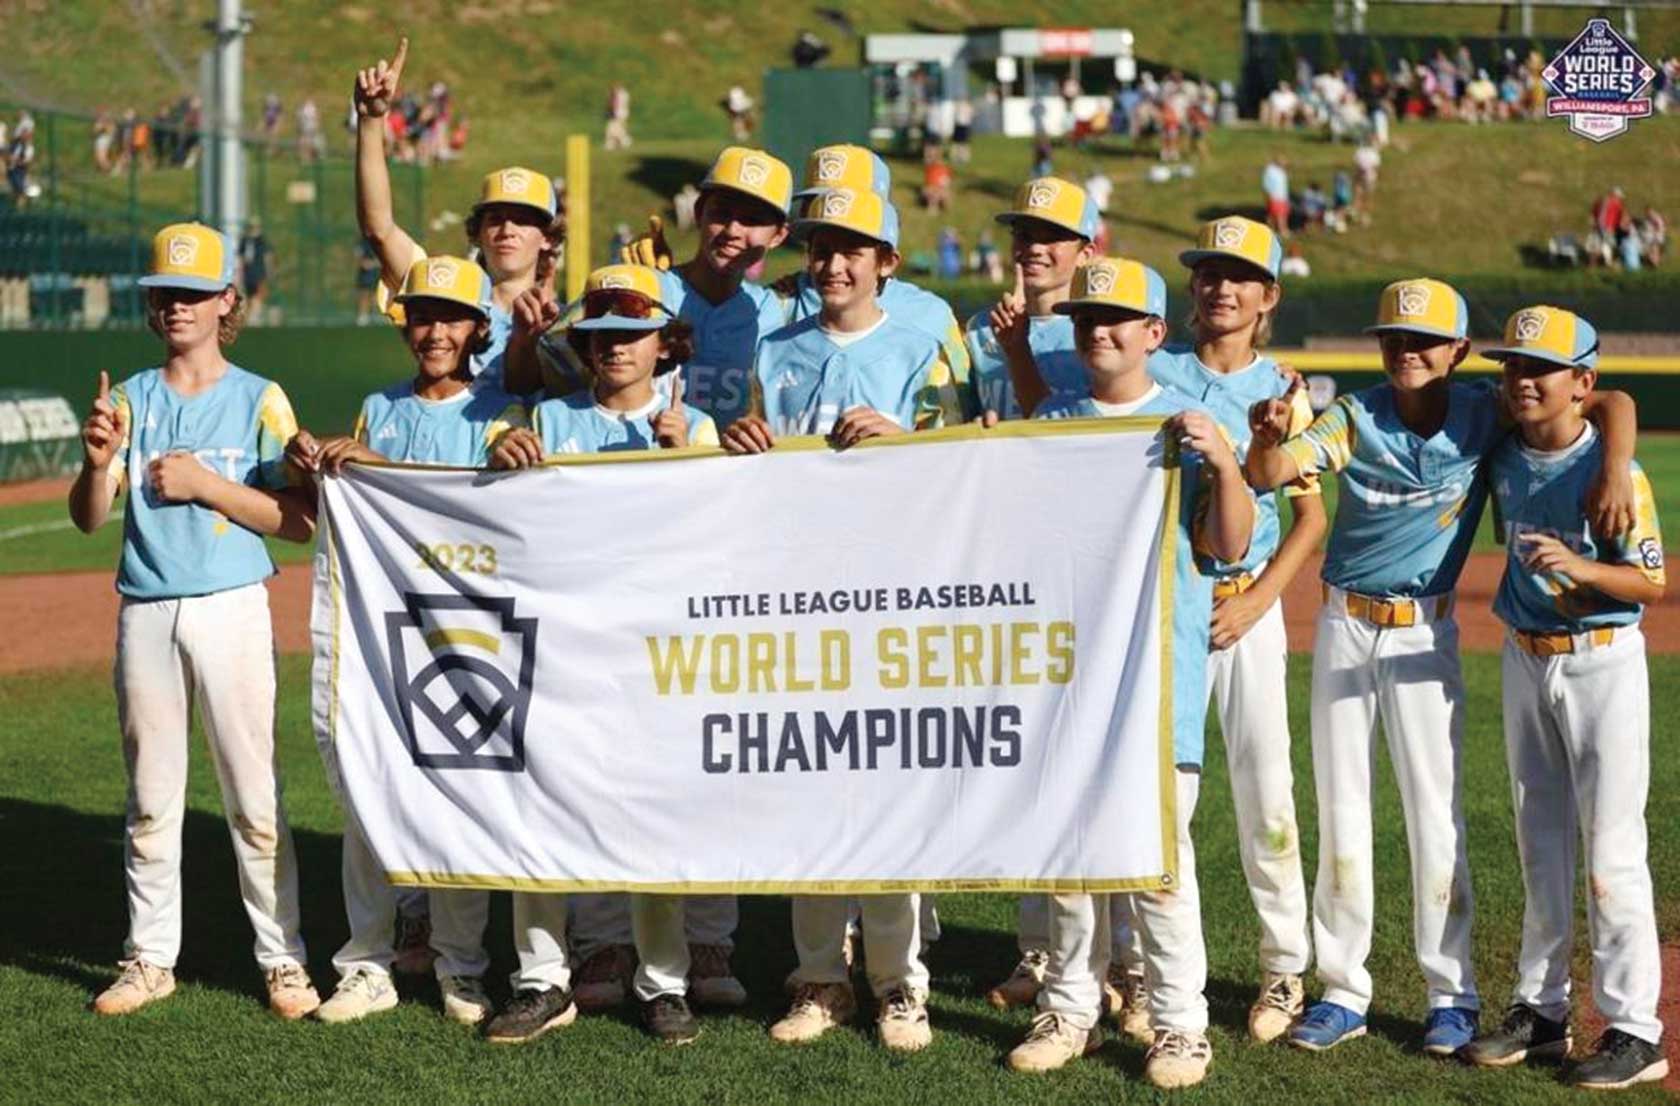 加州队以全垒打击败库拉索岛队参加少年棒球联盟世界大赛